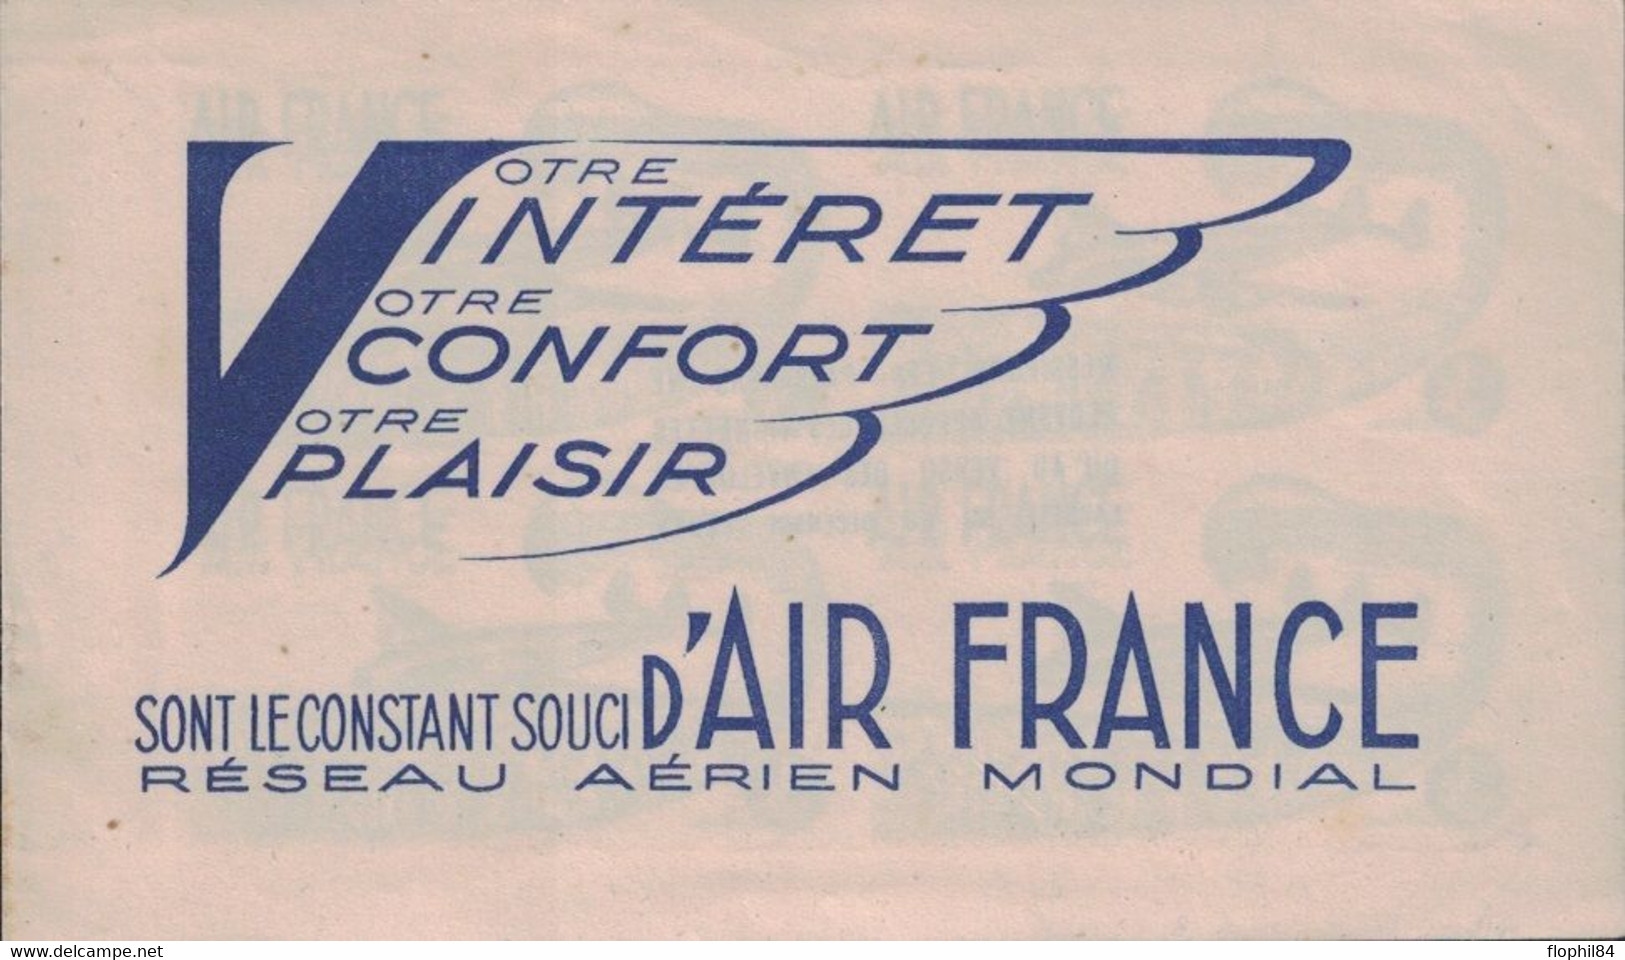 AIR FRANCE - VOTRE INTERET VOTRE CONFORT VOTRE PLAISIR SONT LE CONSTANT SOUCI D'AIR FRANCE - CARNET 4 VIGNETTES. - Aviation